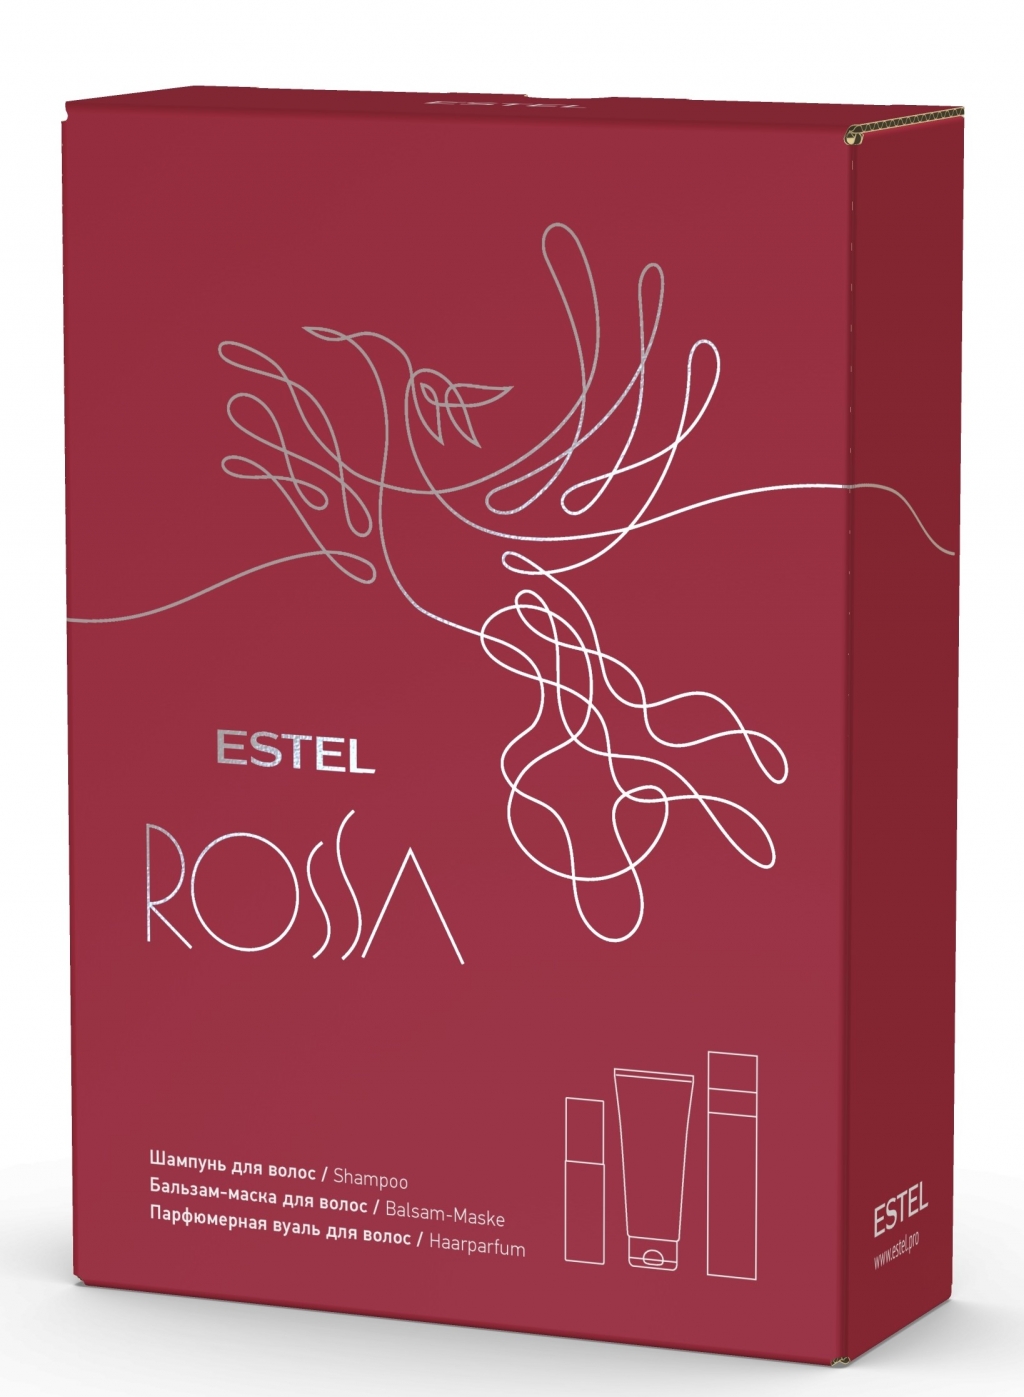 Купить Estel Professional Подарочный набор Rossa: шампунь 250 мл + бальзам-маска 200 мл + парфюмерная вуаль 100 мл (Estel Professional, Rossa)